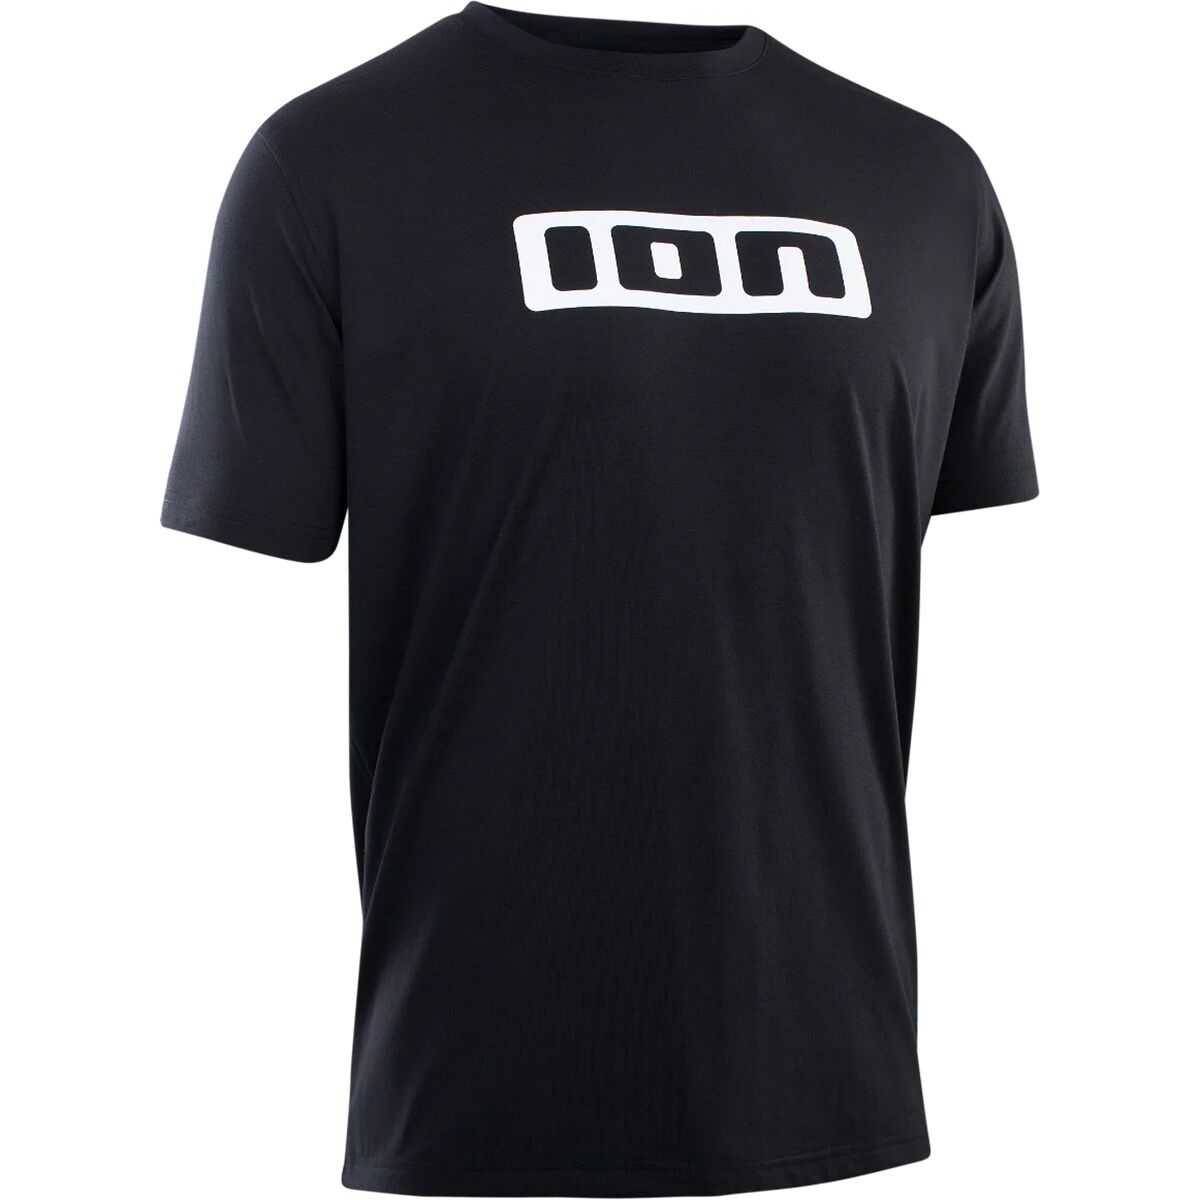 Джерси Dri-Release с короткими рукавами и логотипом ION